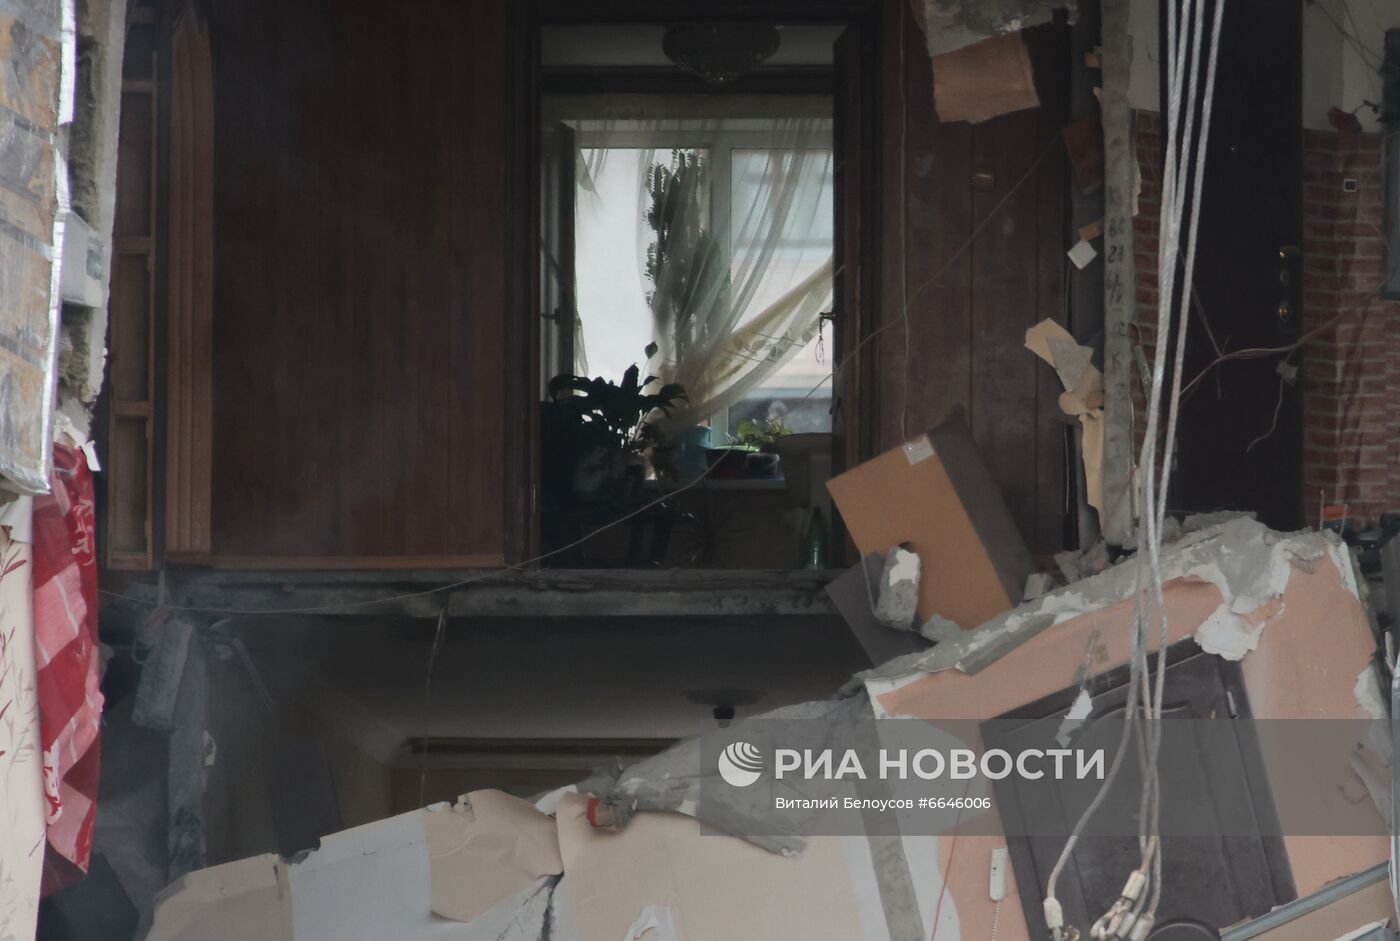 Взрыв газа в жилом доме в Ногинске